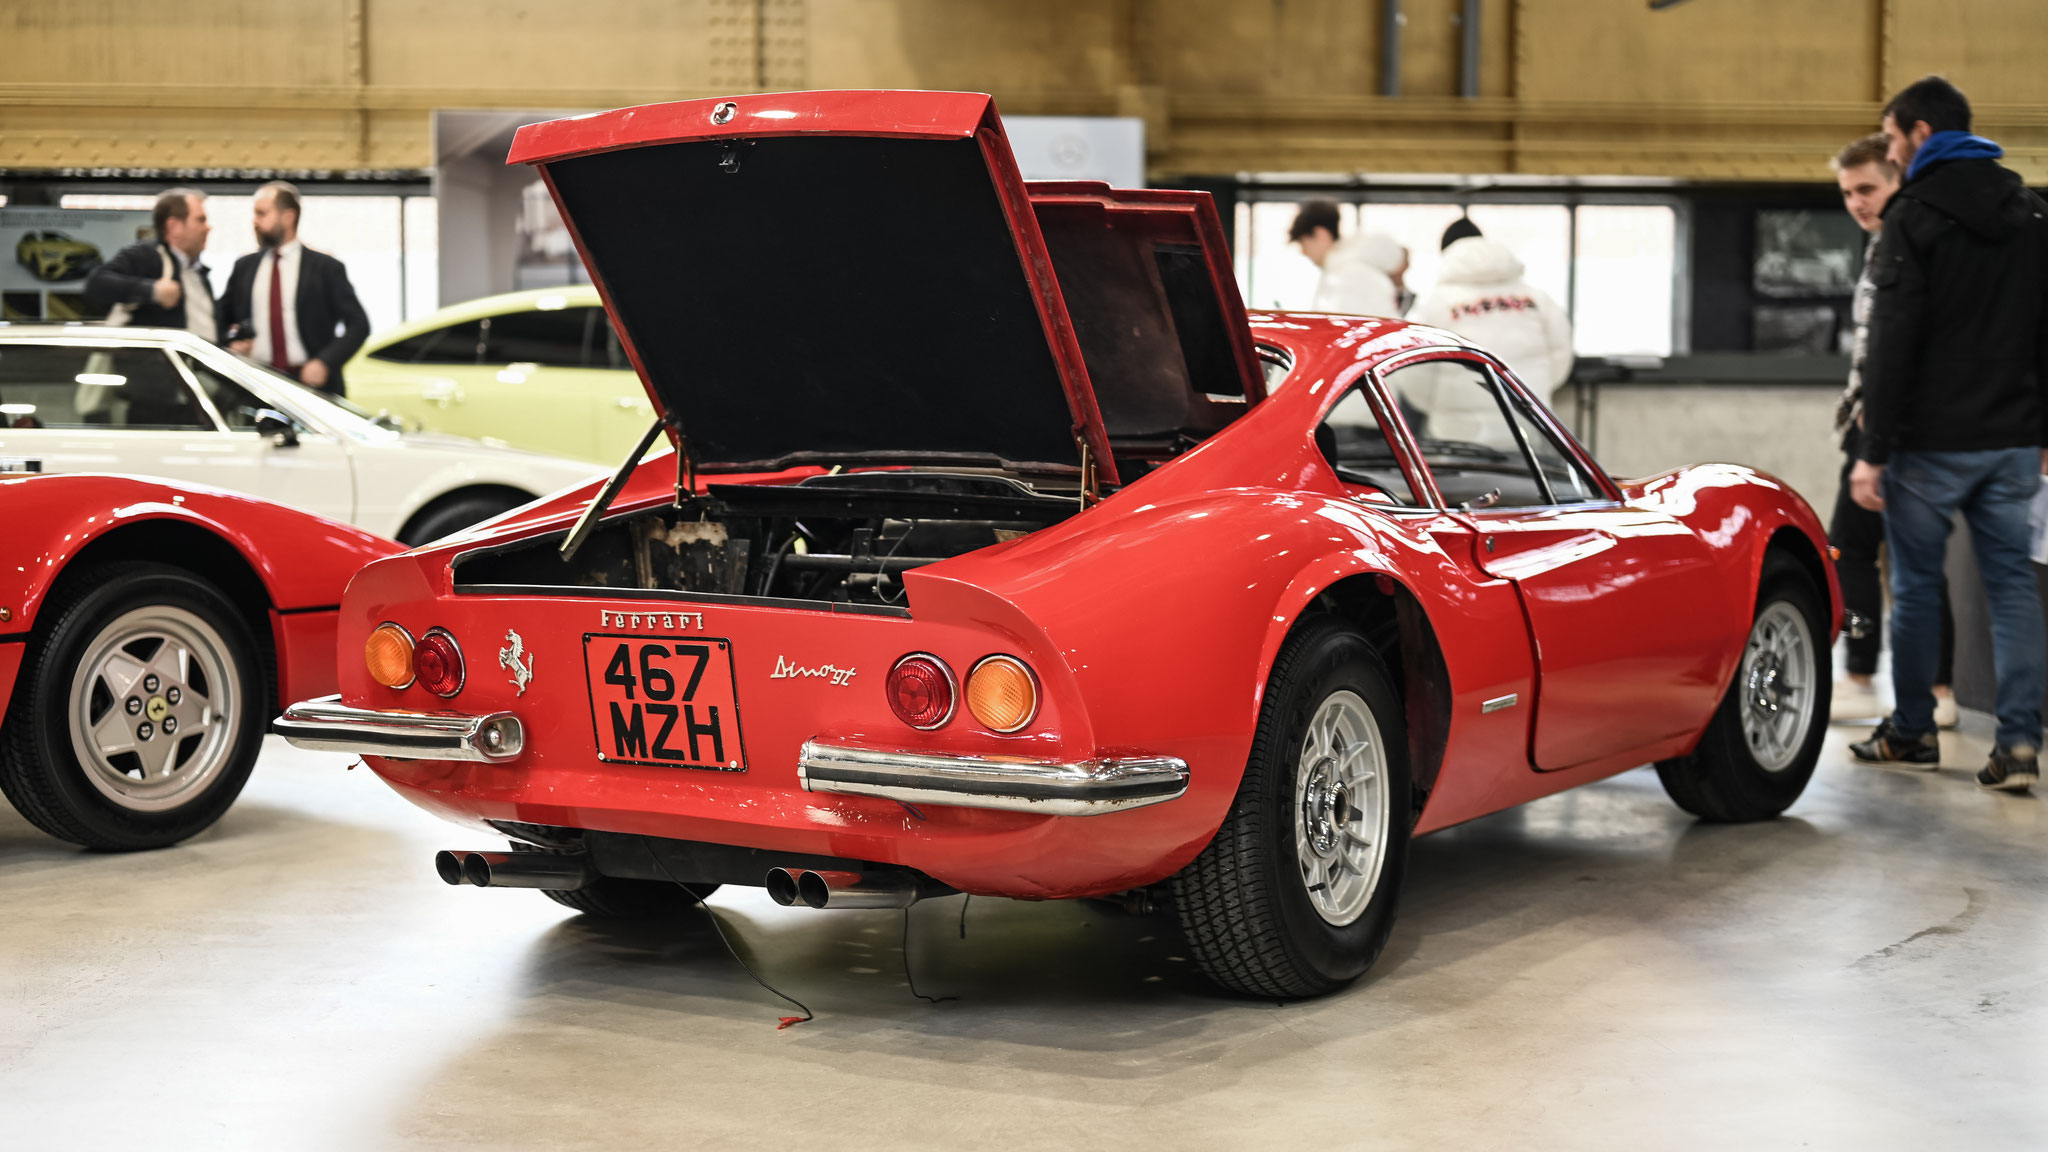 Ferrari Dino 246 - 467MZH (GB)